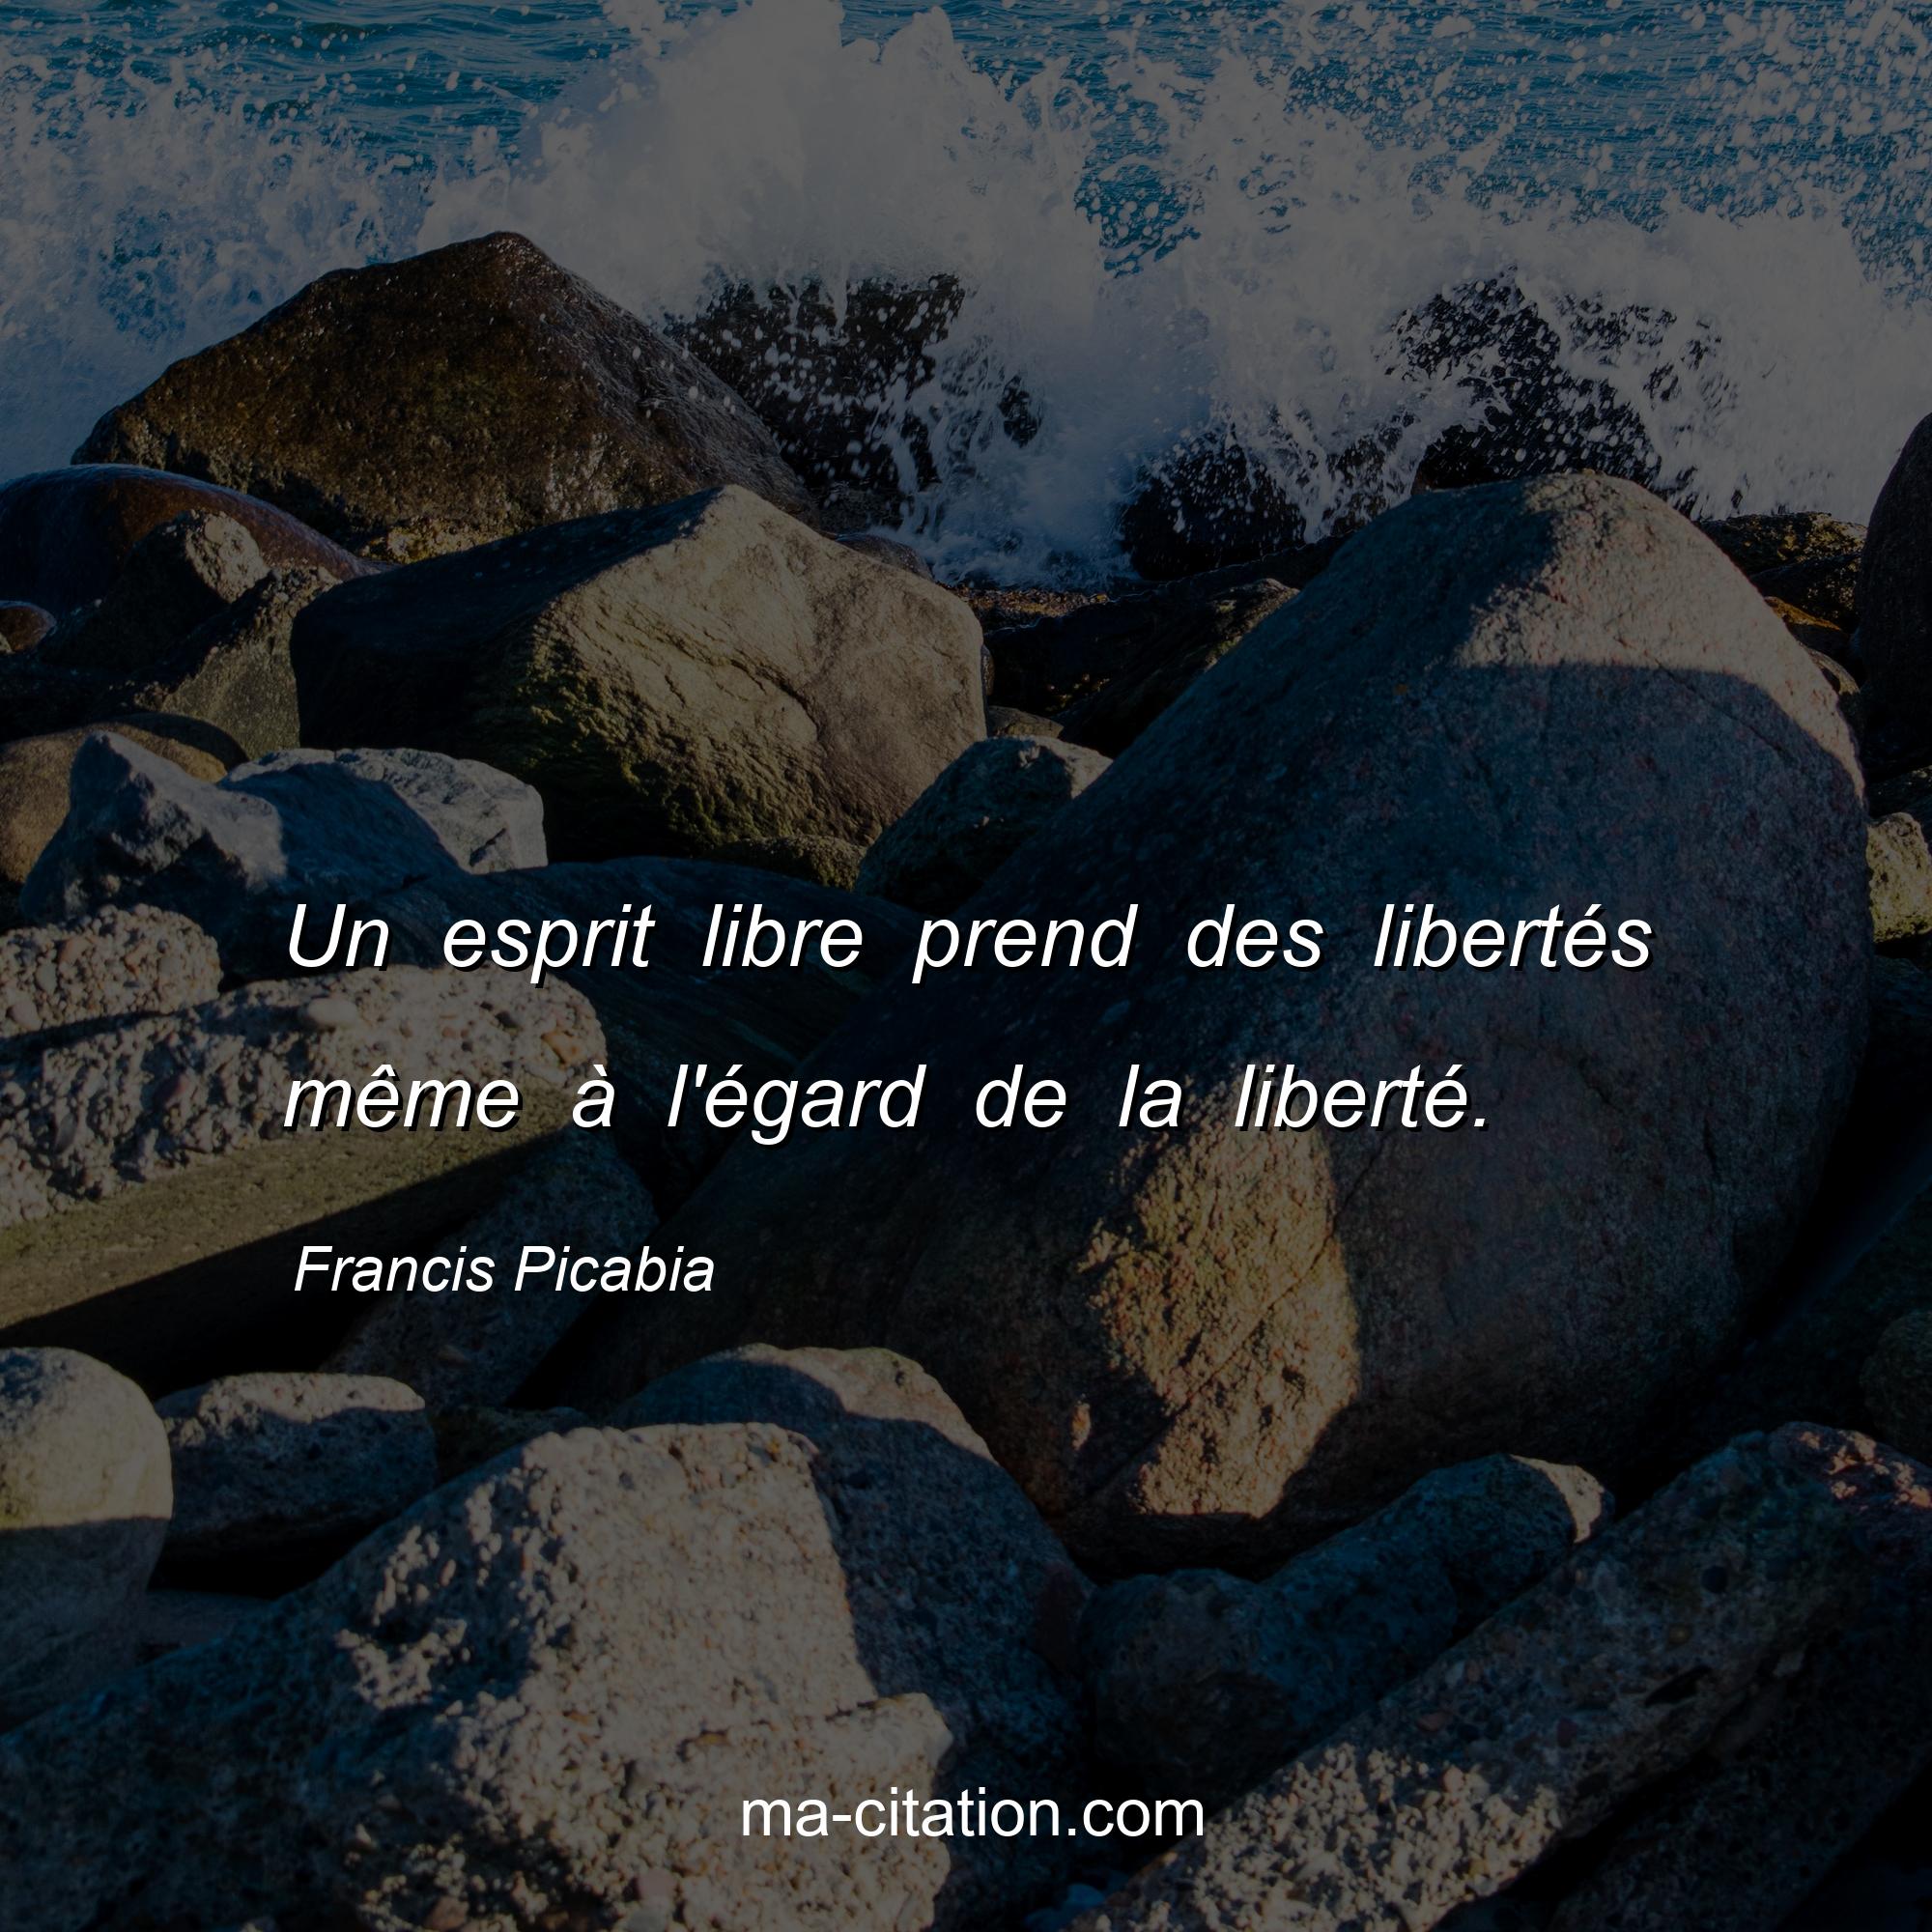 Francis Picabia : Un esprit libre prend des libertés même à l'égard de la liberté.